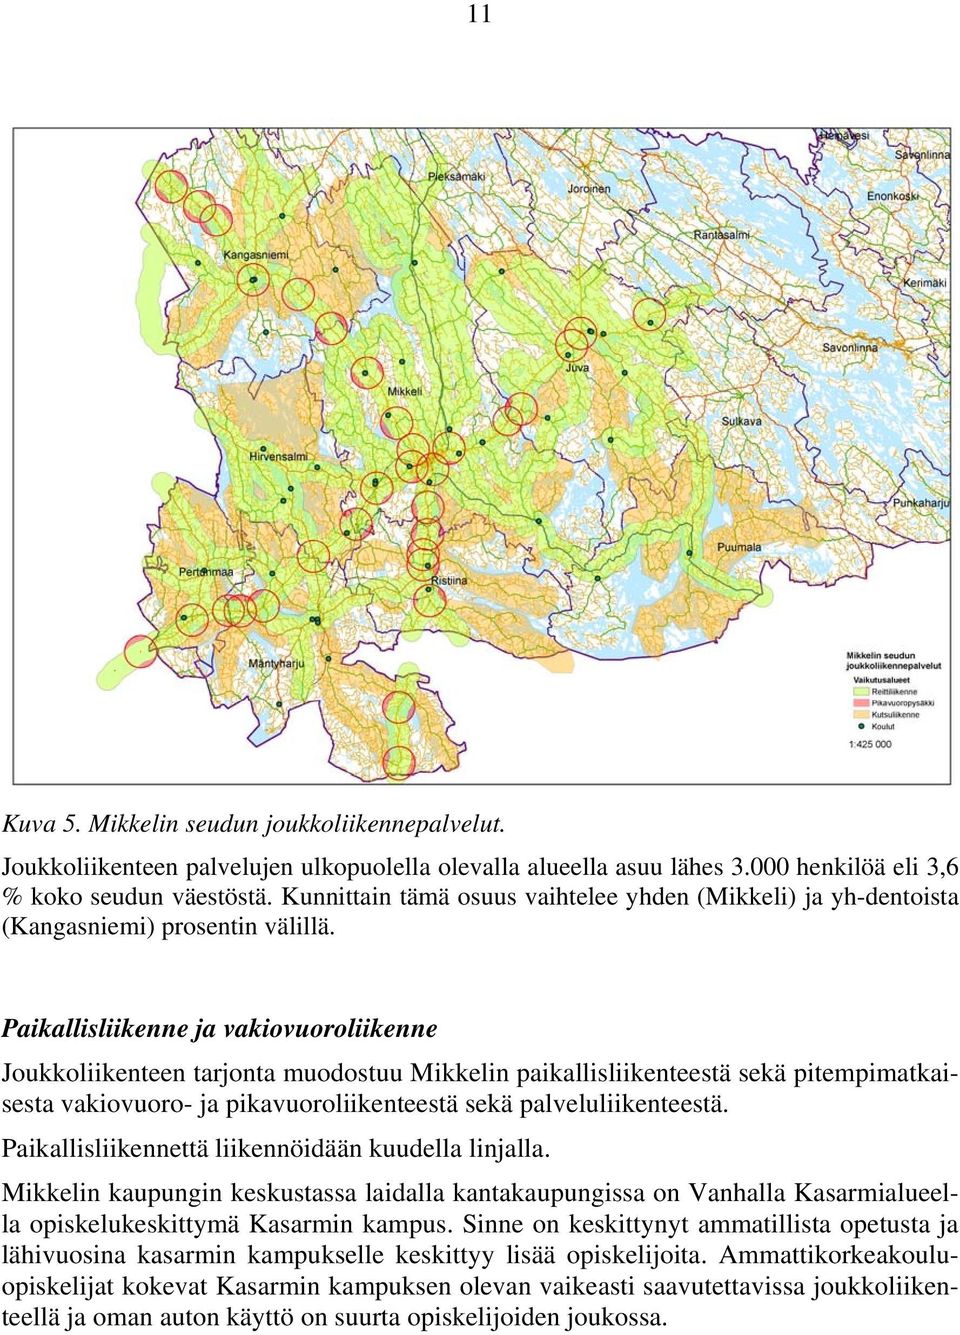 Paikallisliikenne ja vakiovuoroliikenne Joukkoliikenteen tarjonta muodostuu Mikkelin paikallisliikenteestä sekä pitempimatkaisesta vakiovuoro- ja pikavuoroliikenteestä sekä palveluliikenteestä.